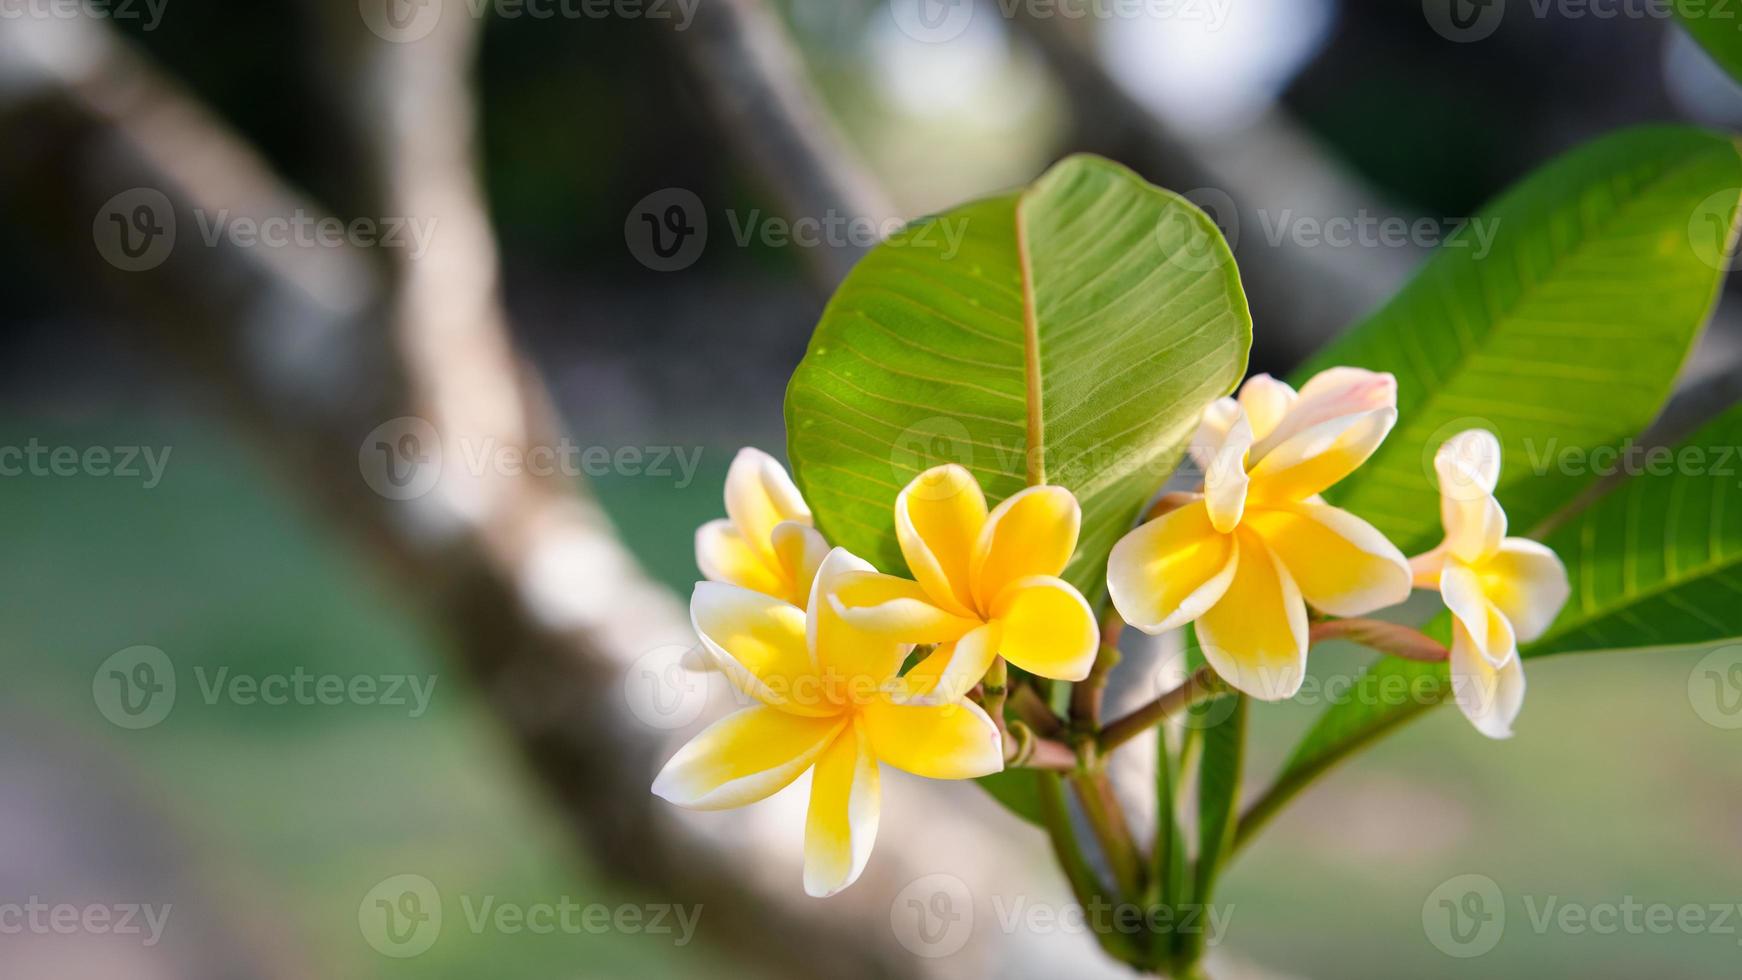 linda cor de pétala amarela e branca frangipani, buquê de flores de plumeria com fundo verde natural foto